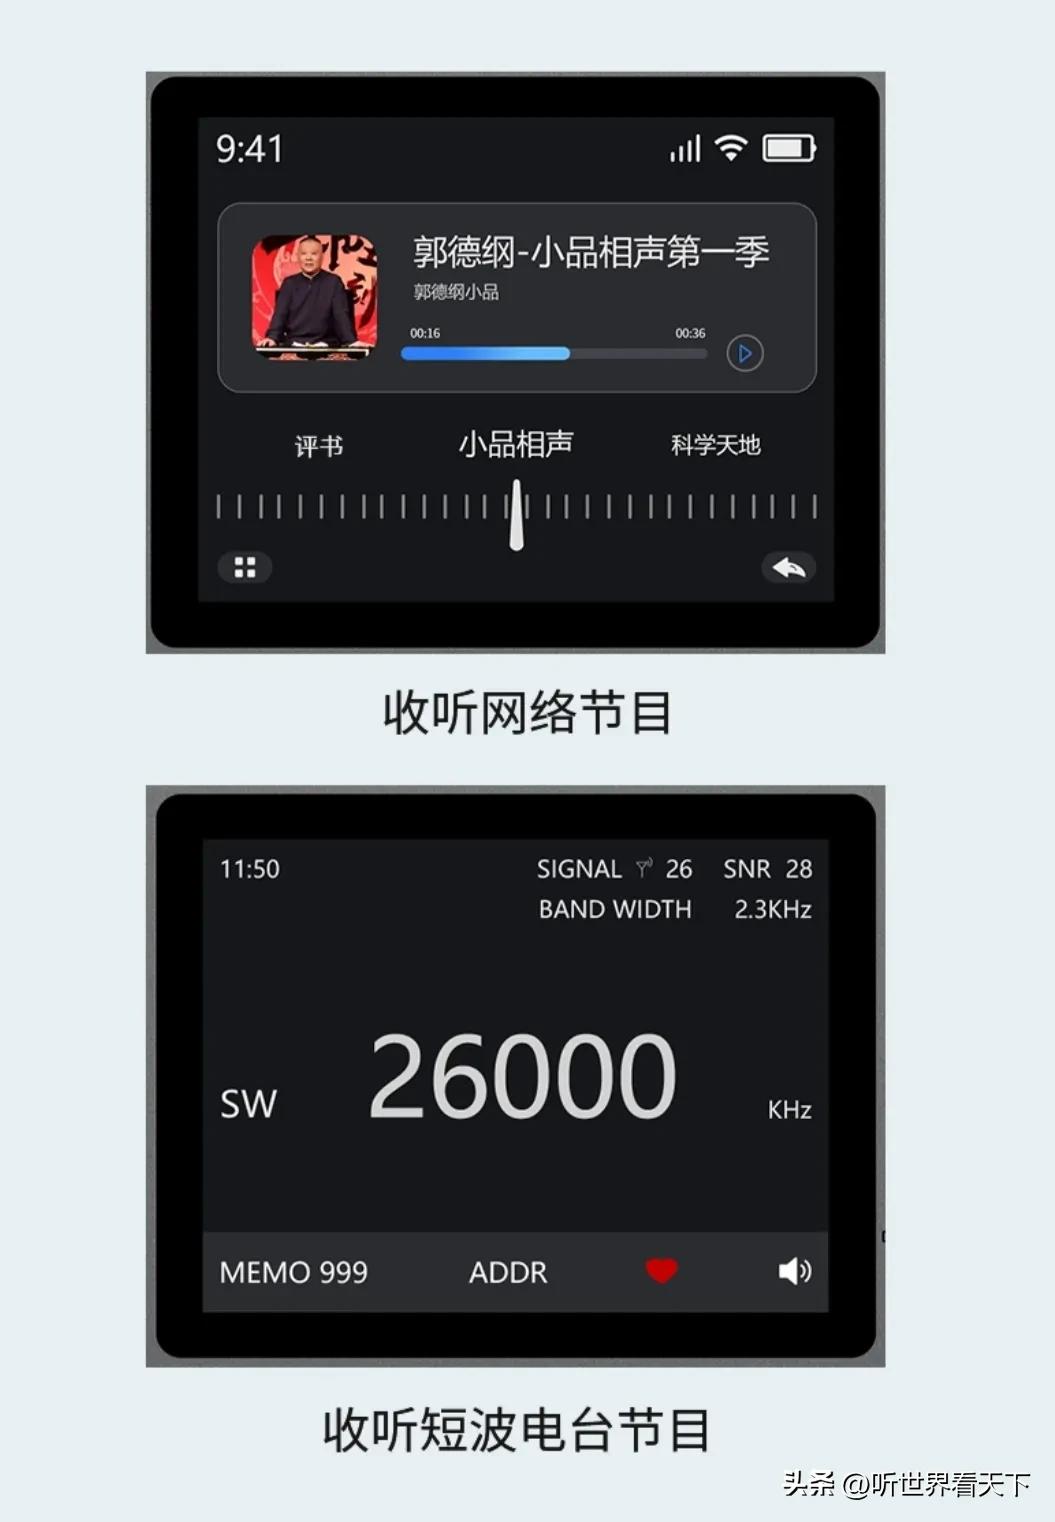 Choyong LC90 Internet Radio, Wi-Fi/4G, FM/LW/MW/SW, 40K Stations